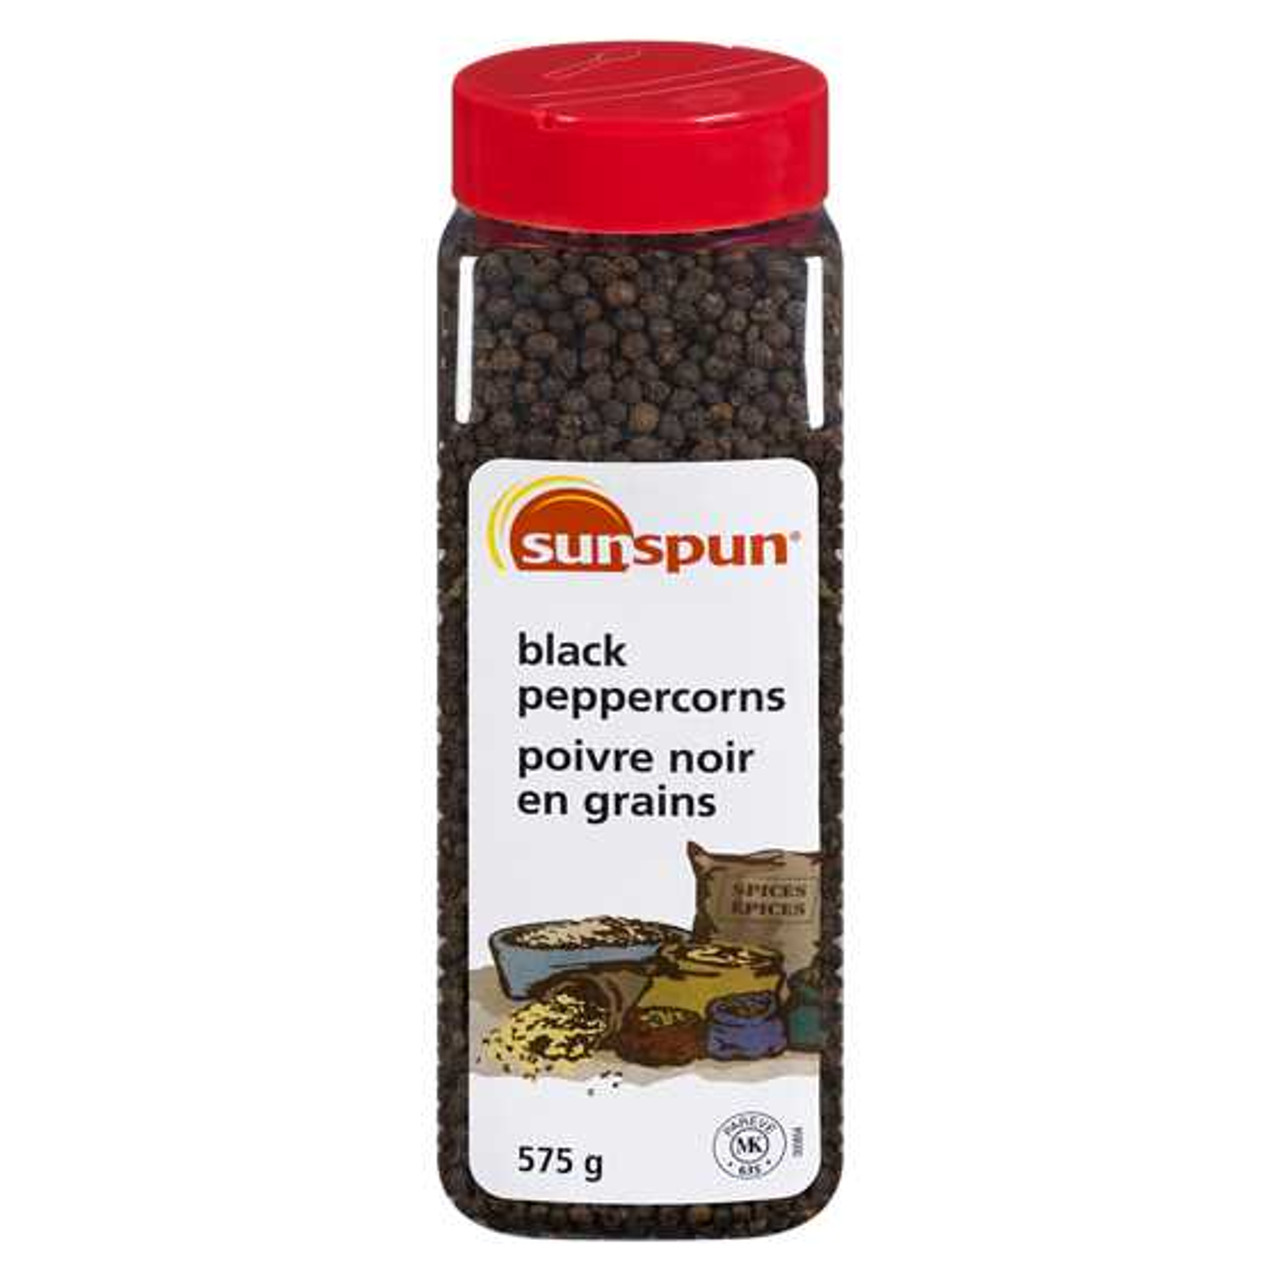 SUNSPUN Black Peppercorns 575 g SUNSPUN Chicken Pieces